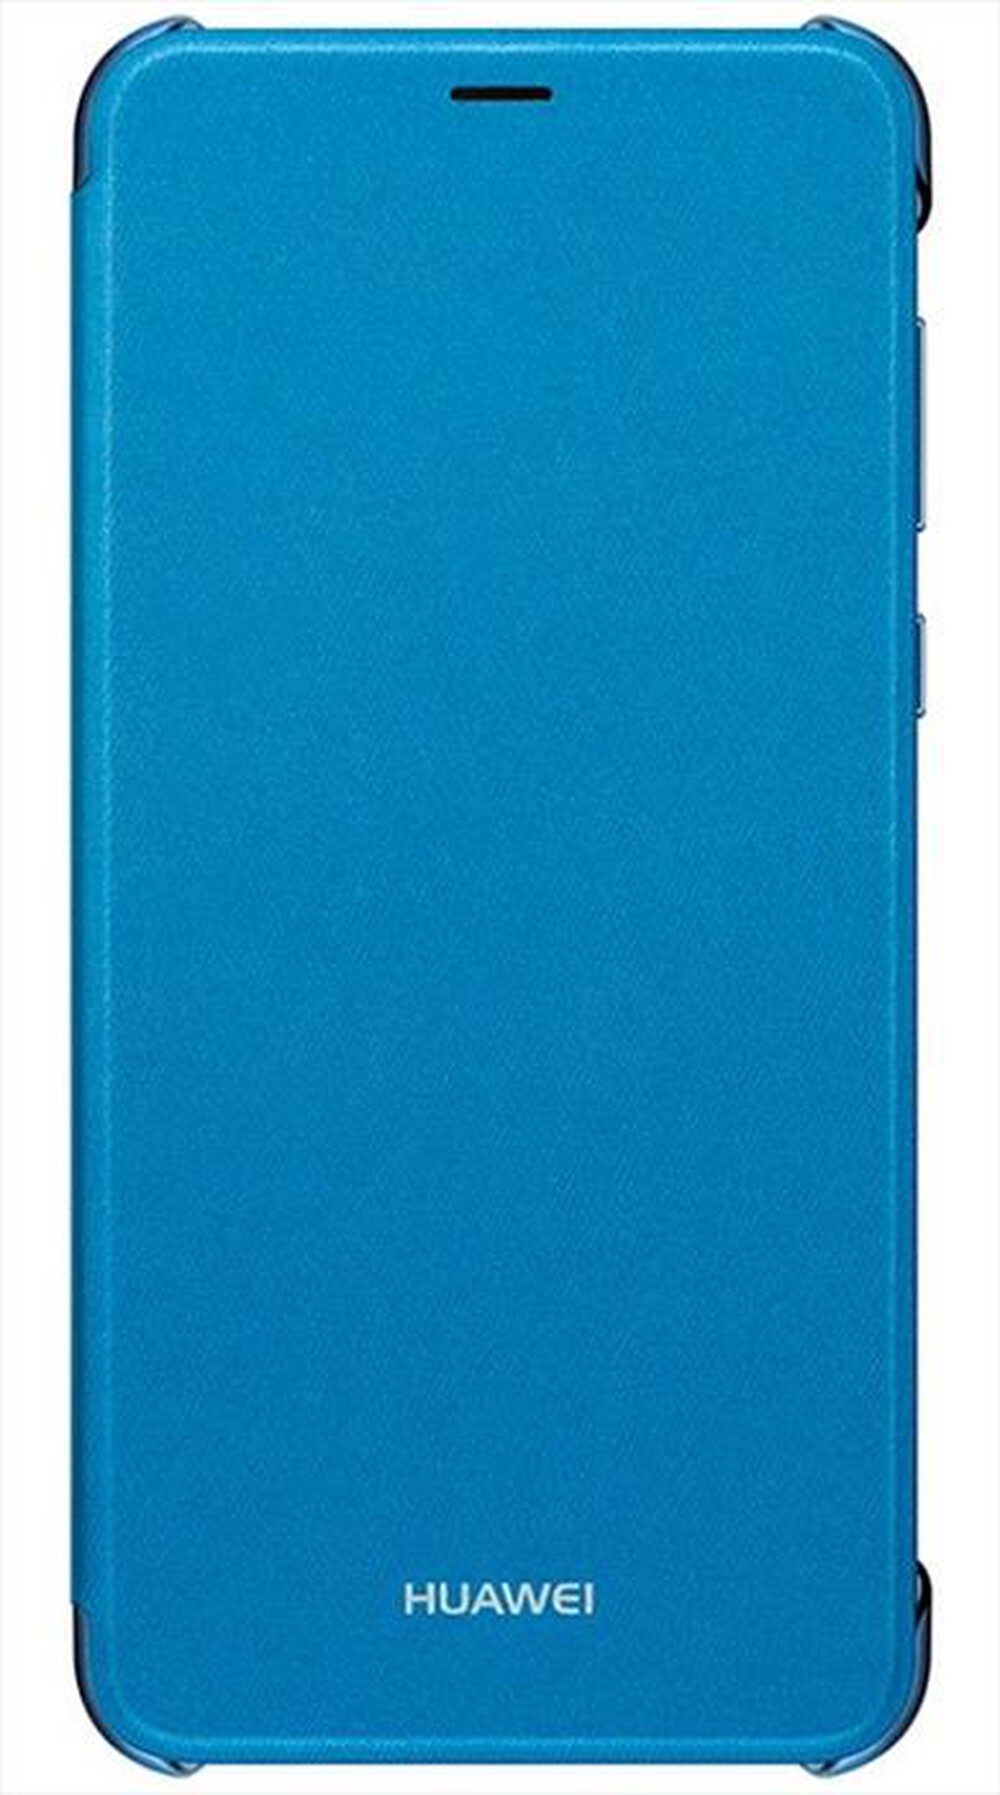 "HUAWEI - P Smart Flip Cover-Blu"